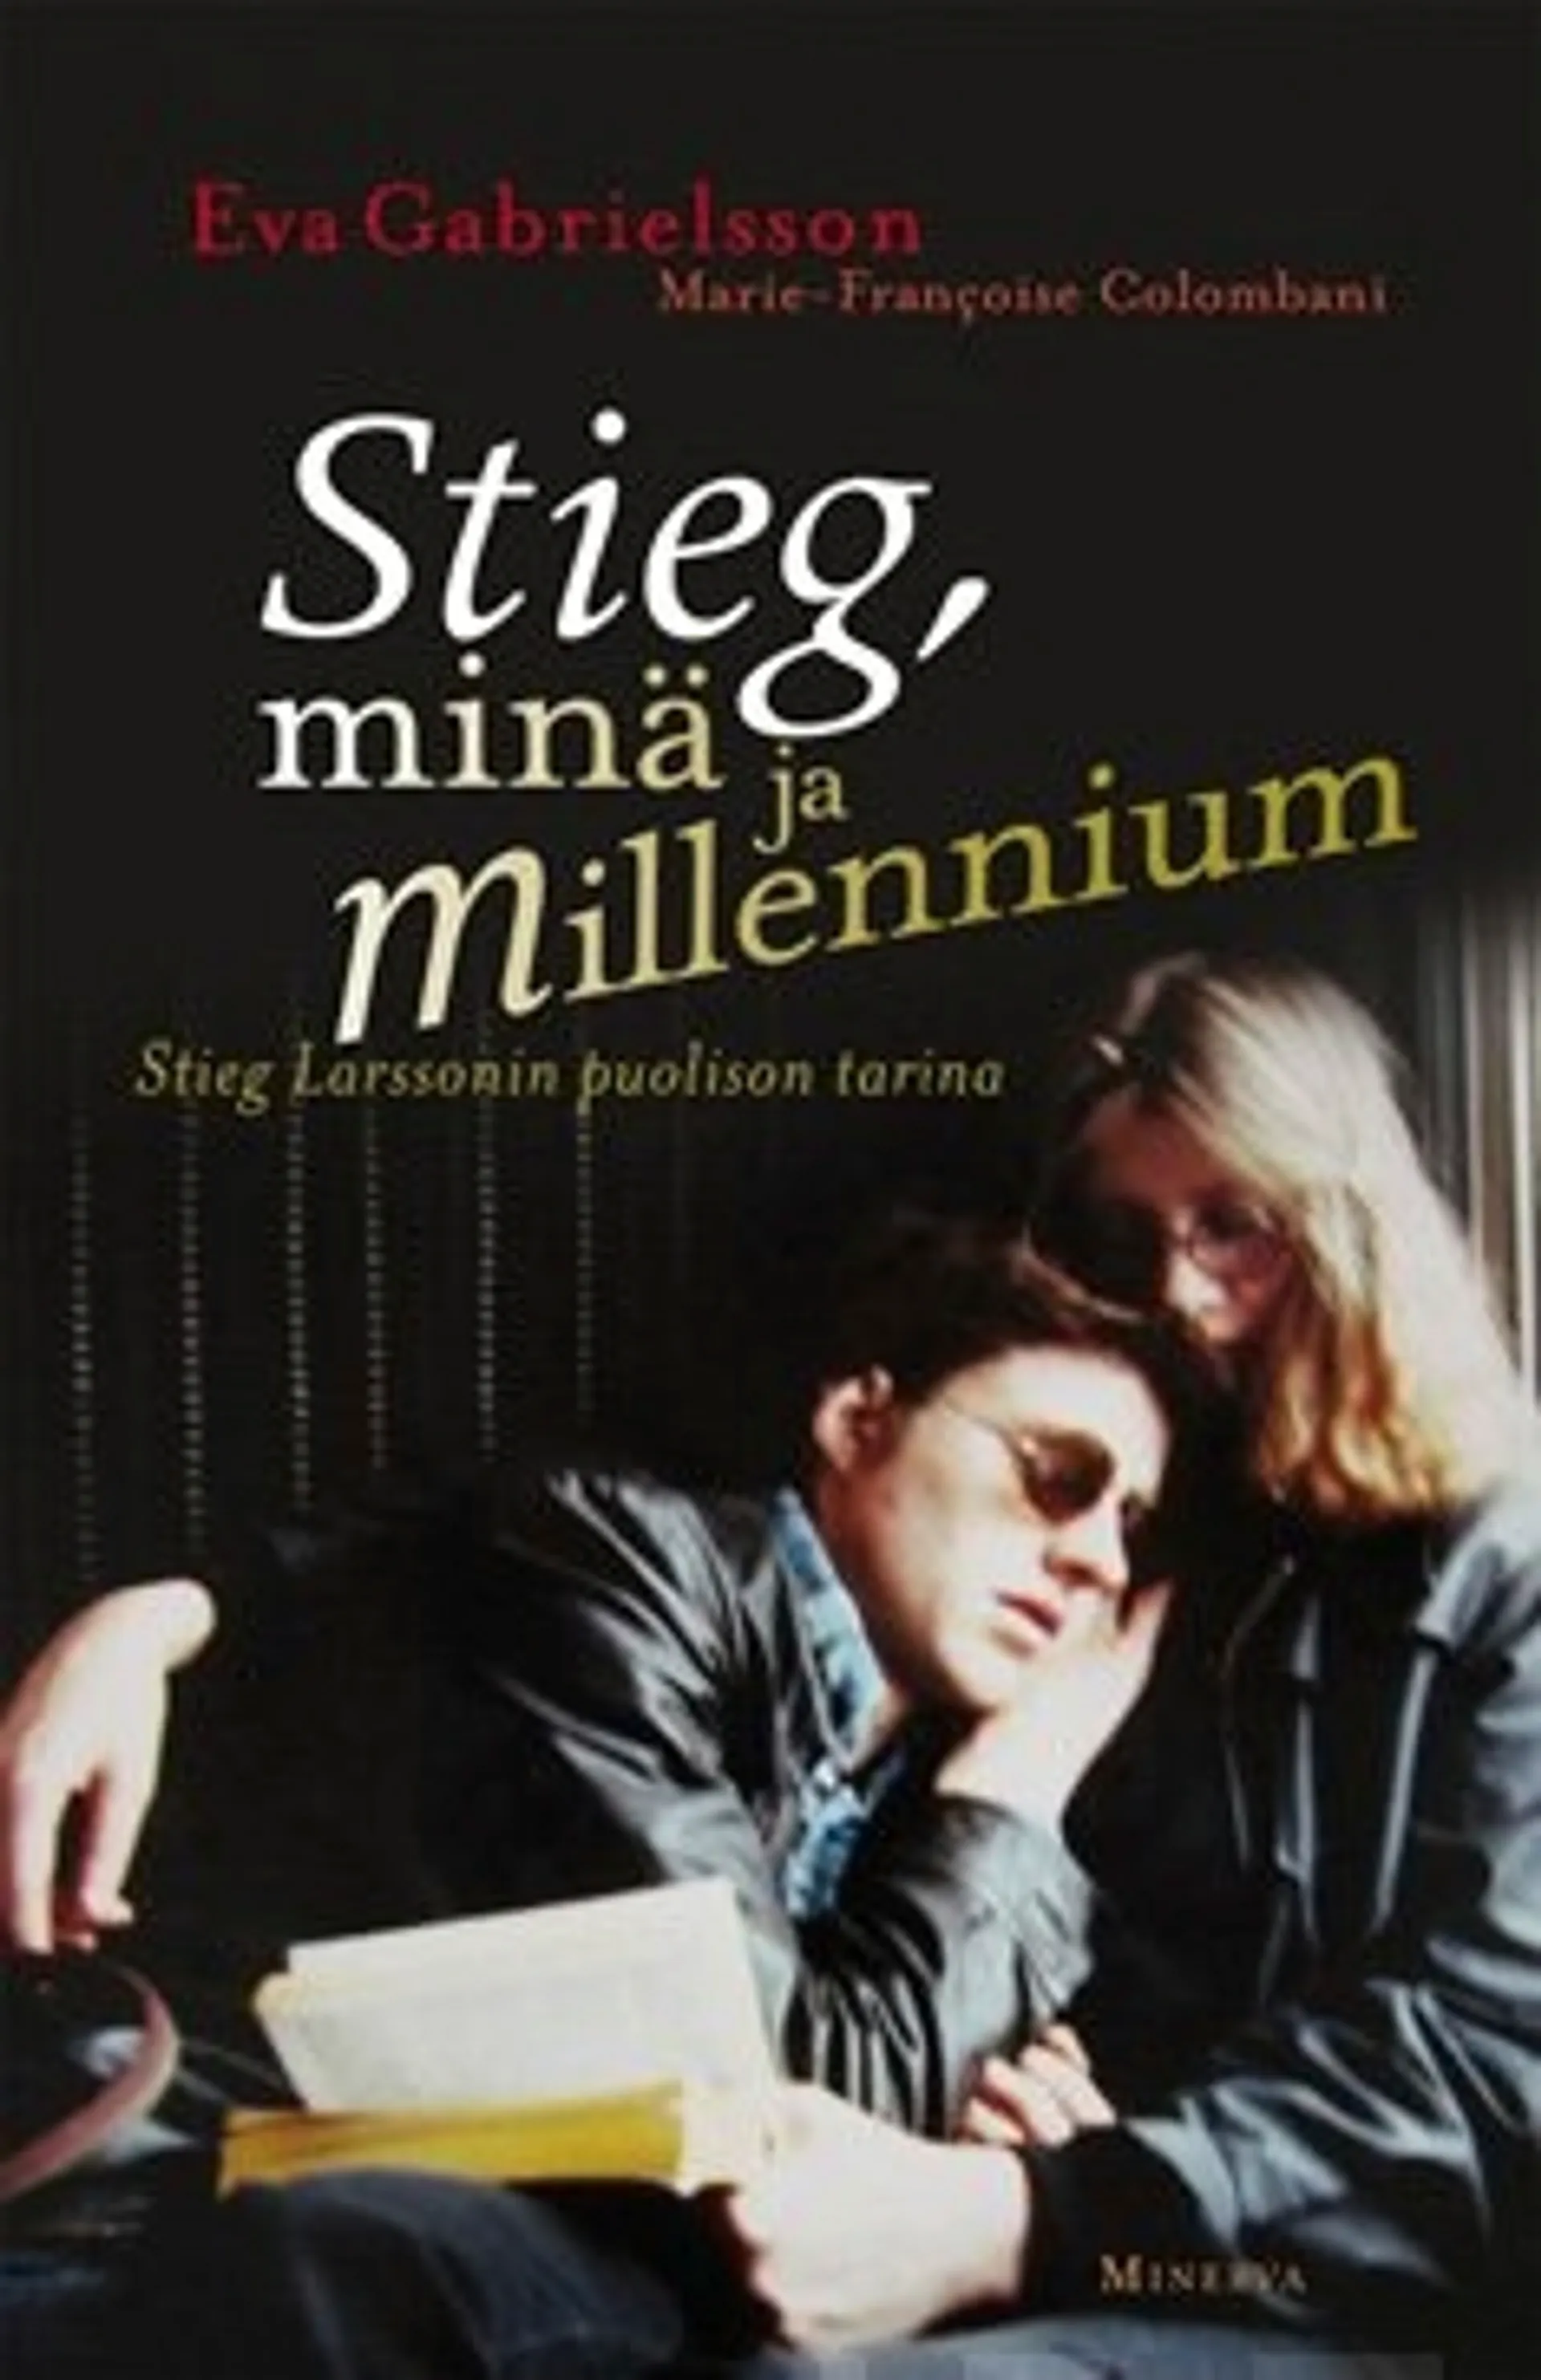 Stieg, minä ja Millennium